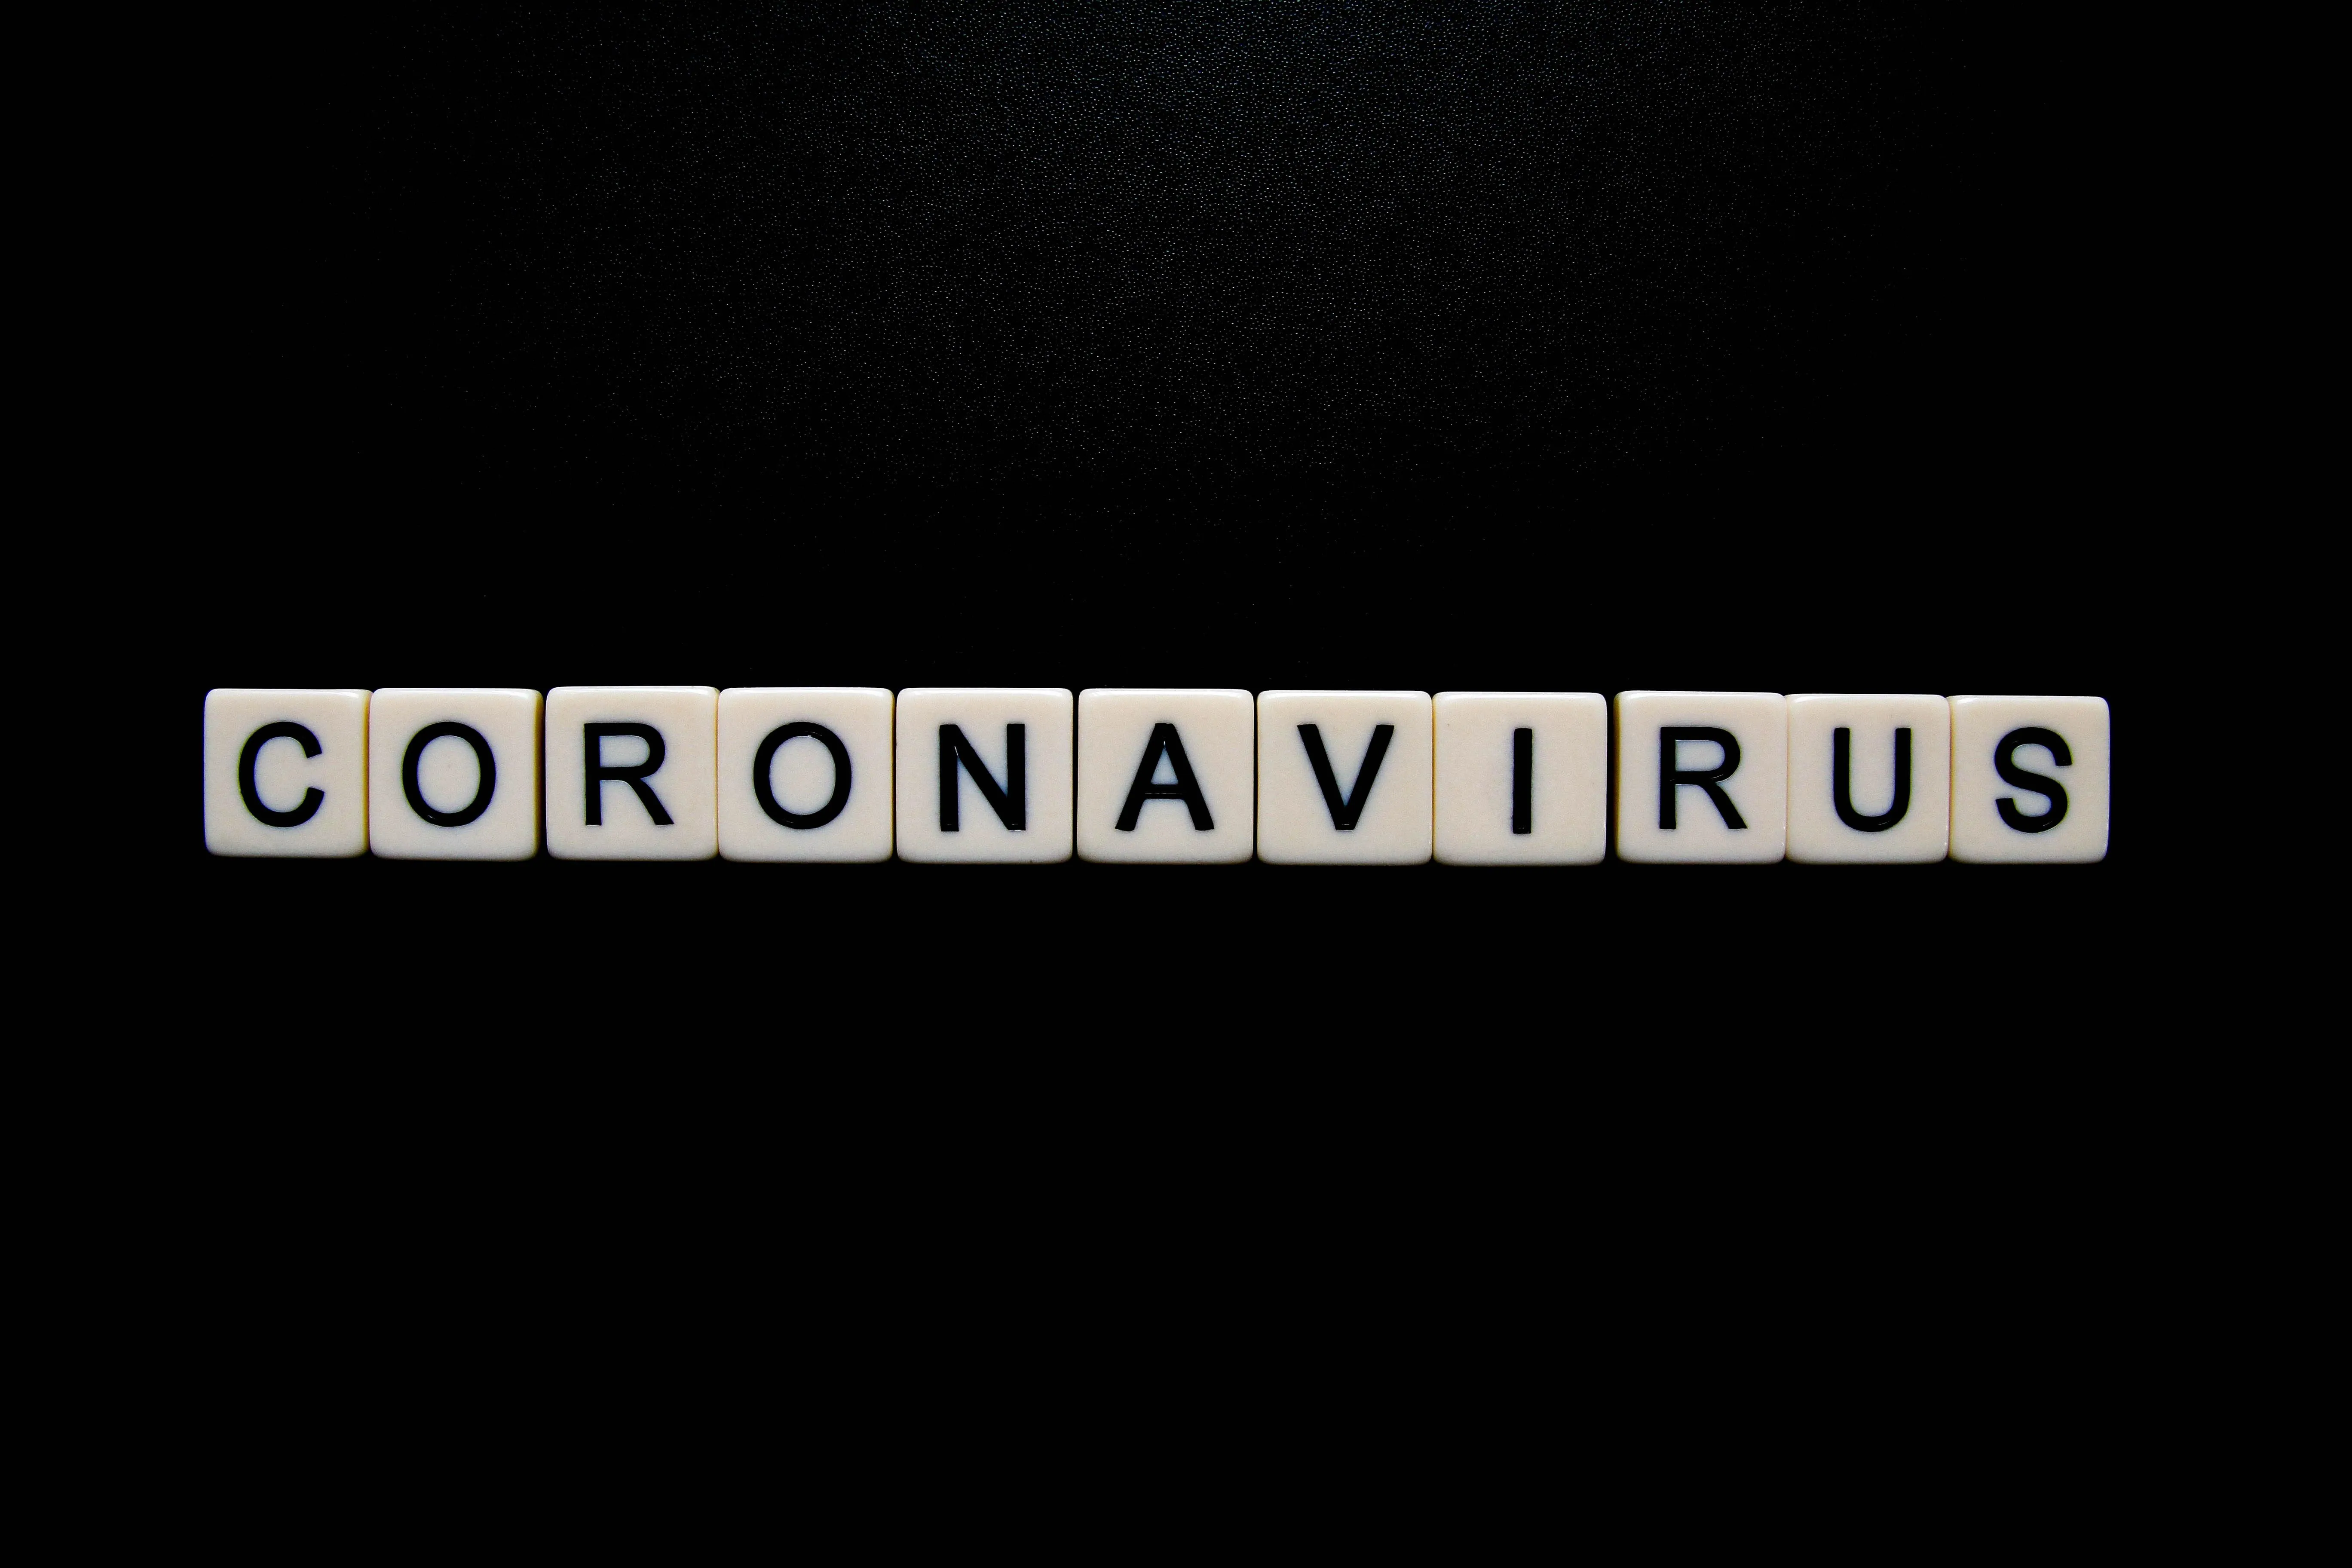 Coronavirus letter tiles